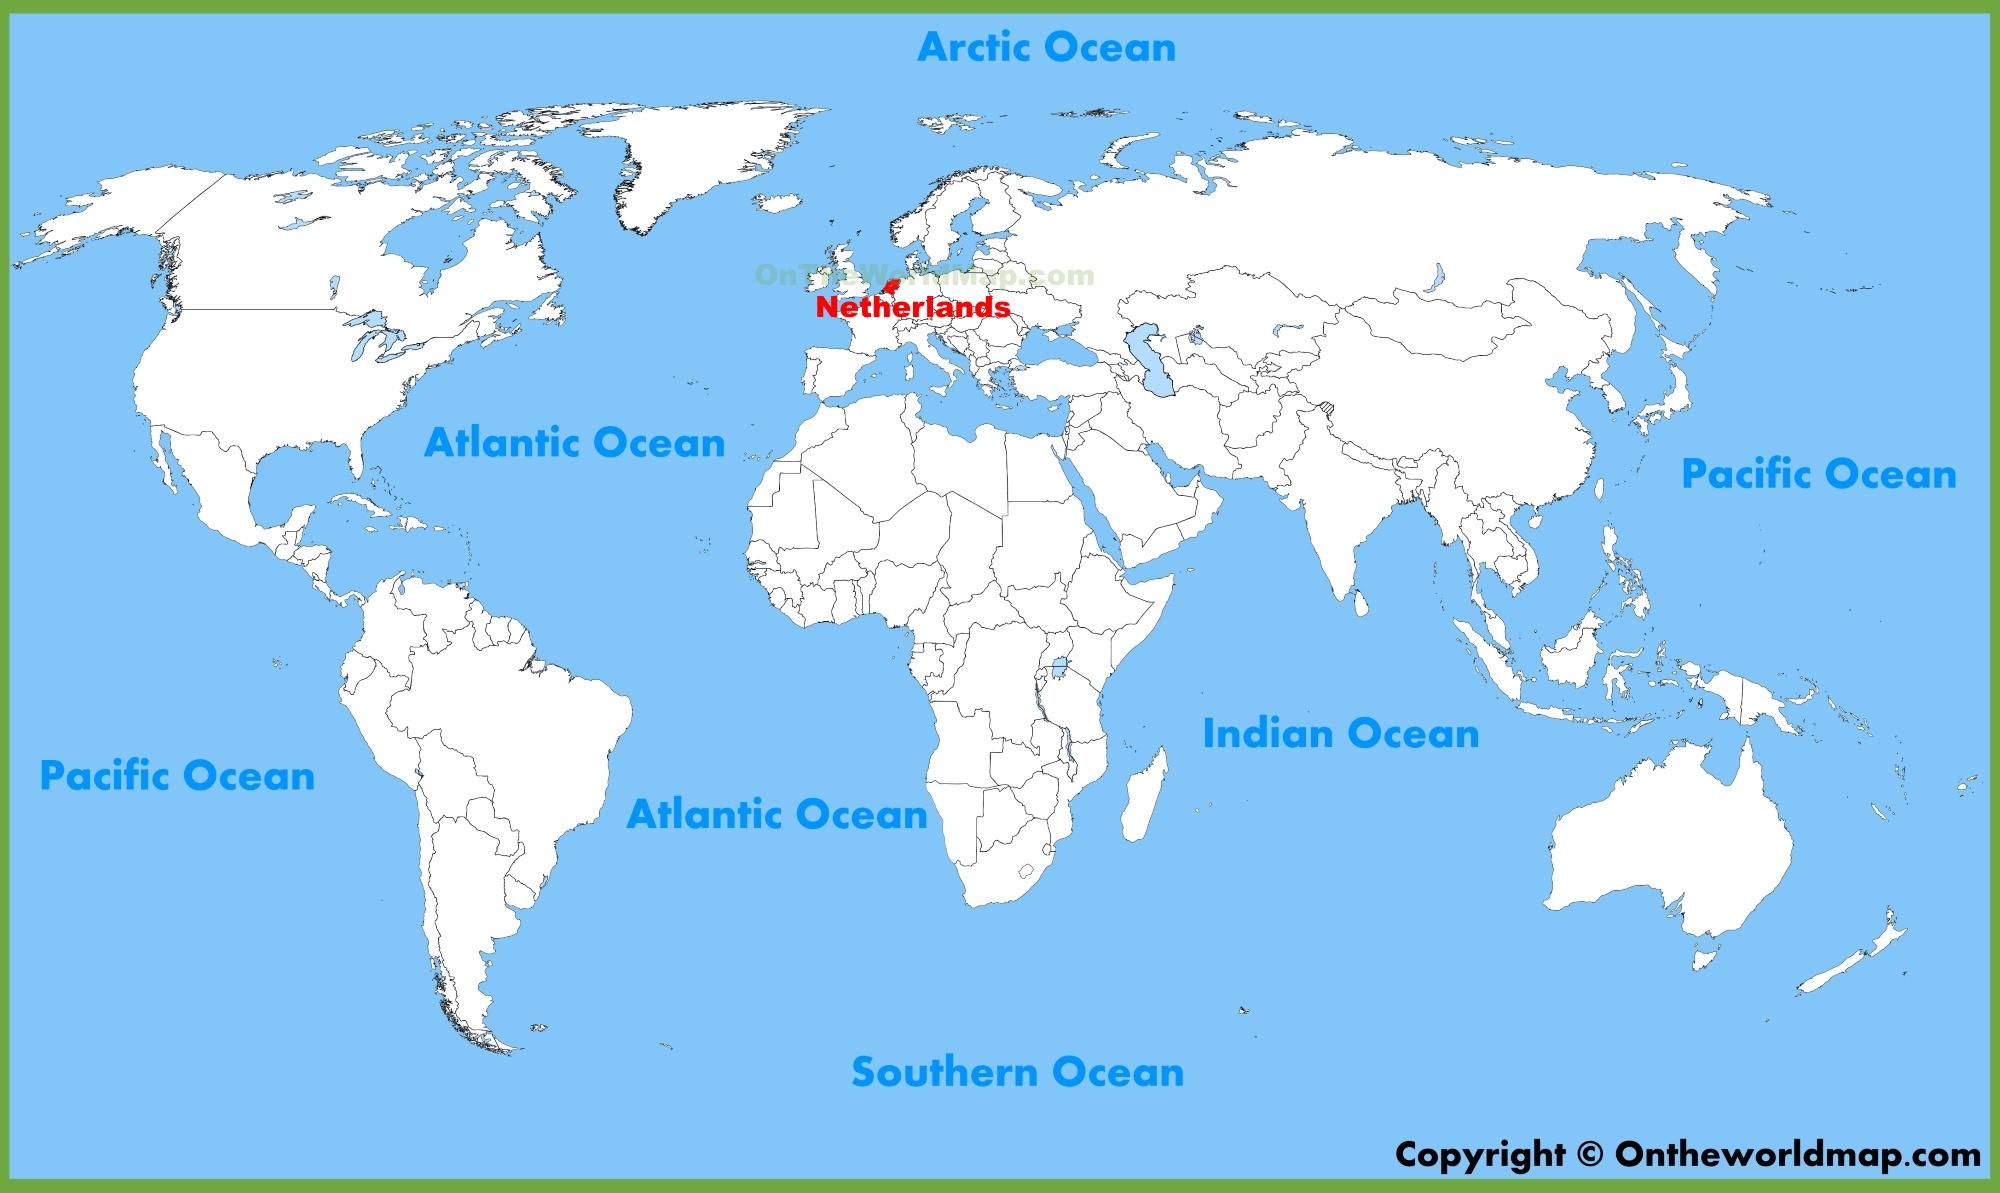 karta svijeta mora Karta svijeta Nizozemska   Holandija na karti svijeta (Zapadna  karta svijeta mora